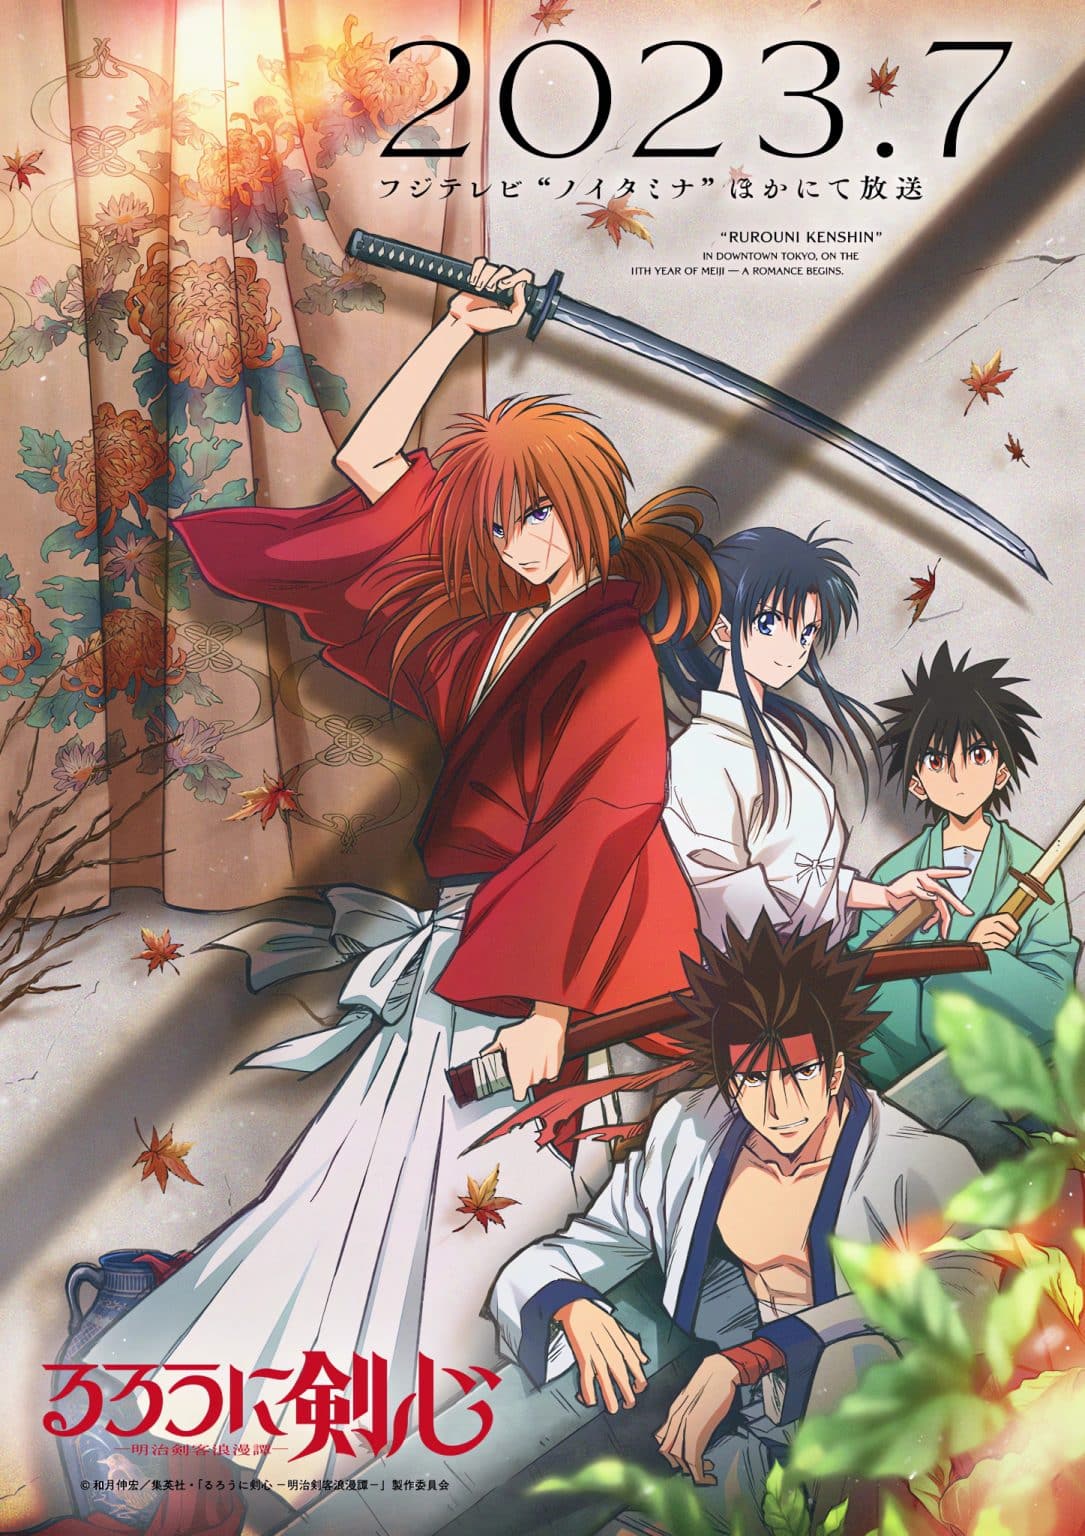 Rurouni Kenshin 2023 - Kenshin Le Vagabond